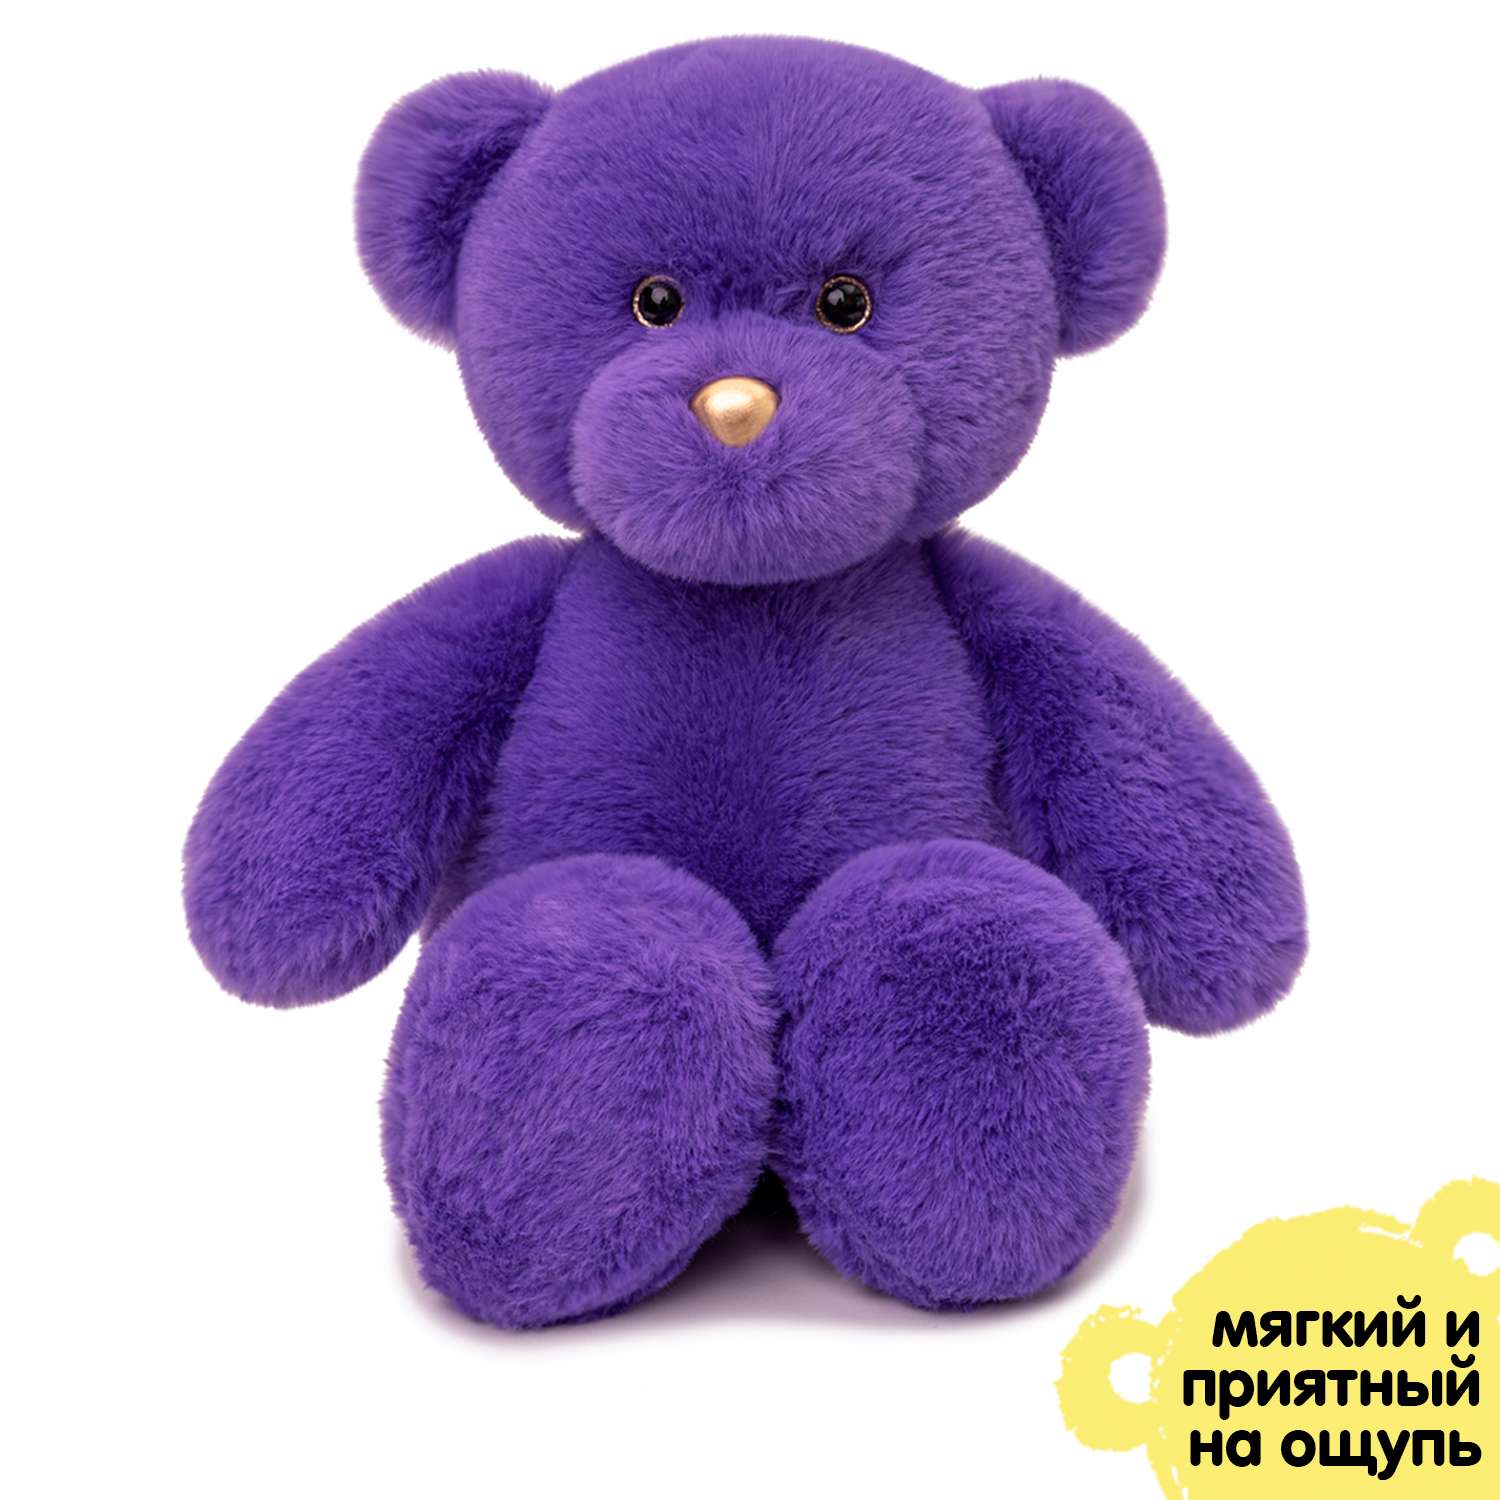 Мягкая игрушка KULT of toys Плюшевый медведь 35 см цвет фиолетовый - фото 9